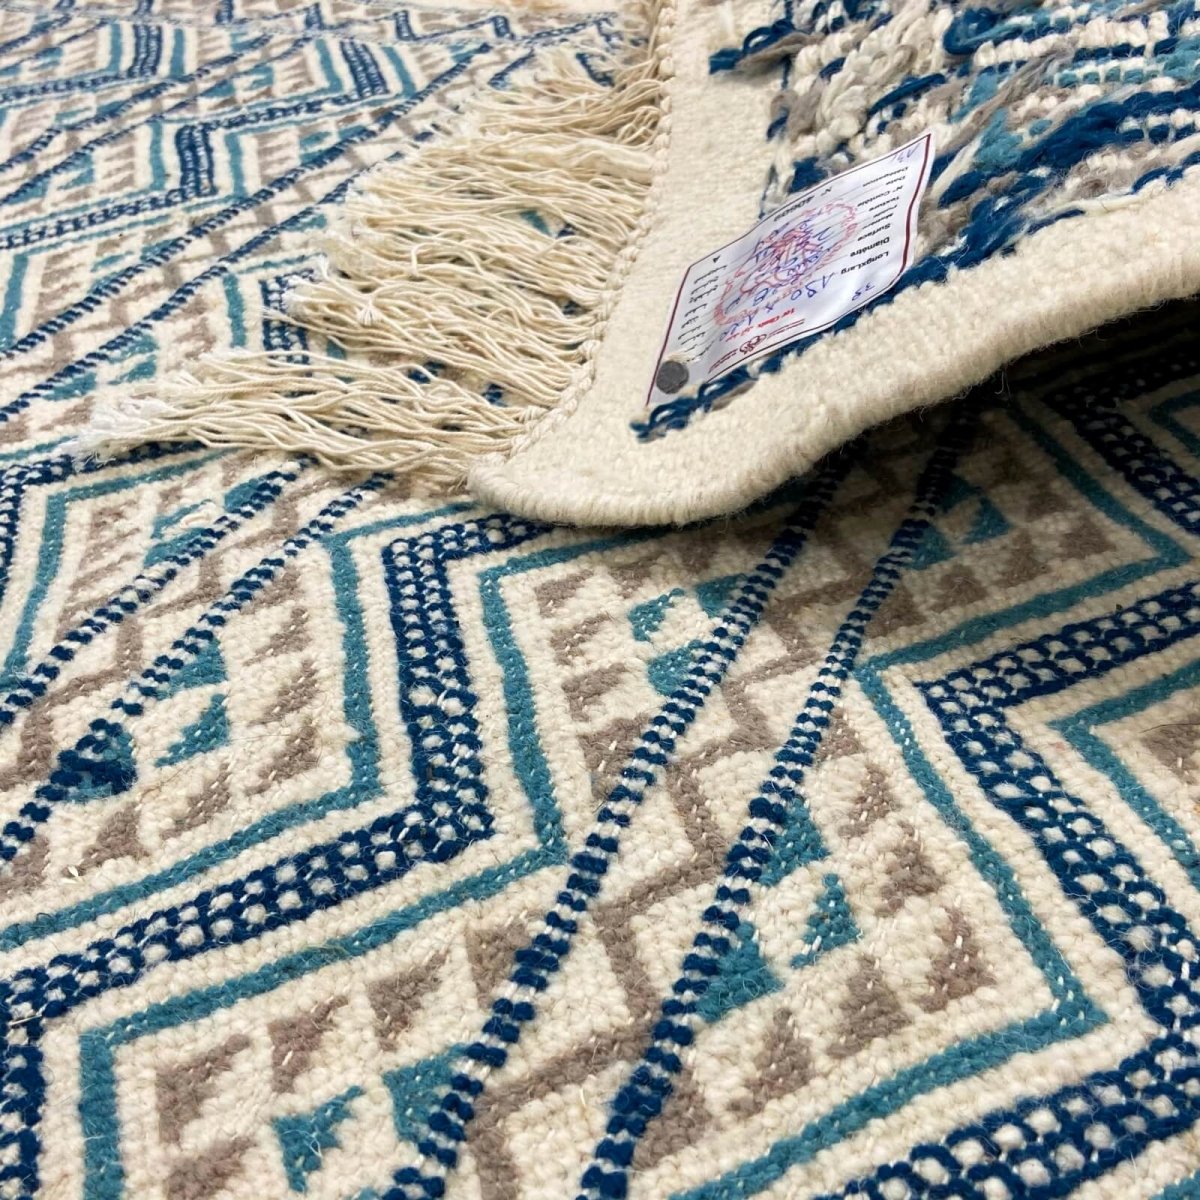 Berber tapijt Vloerkleed  Margoum 120x190 Blauw/Wit |Handgeweven, Wol, Tunesië Tunesisch Margoum Tapijt uit de stad Kairouan. Re